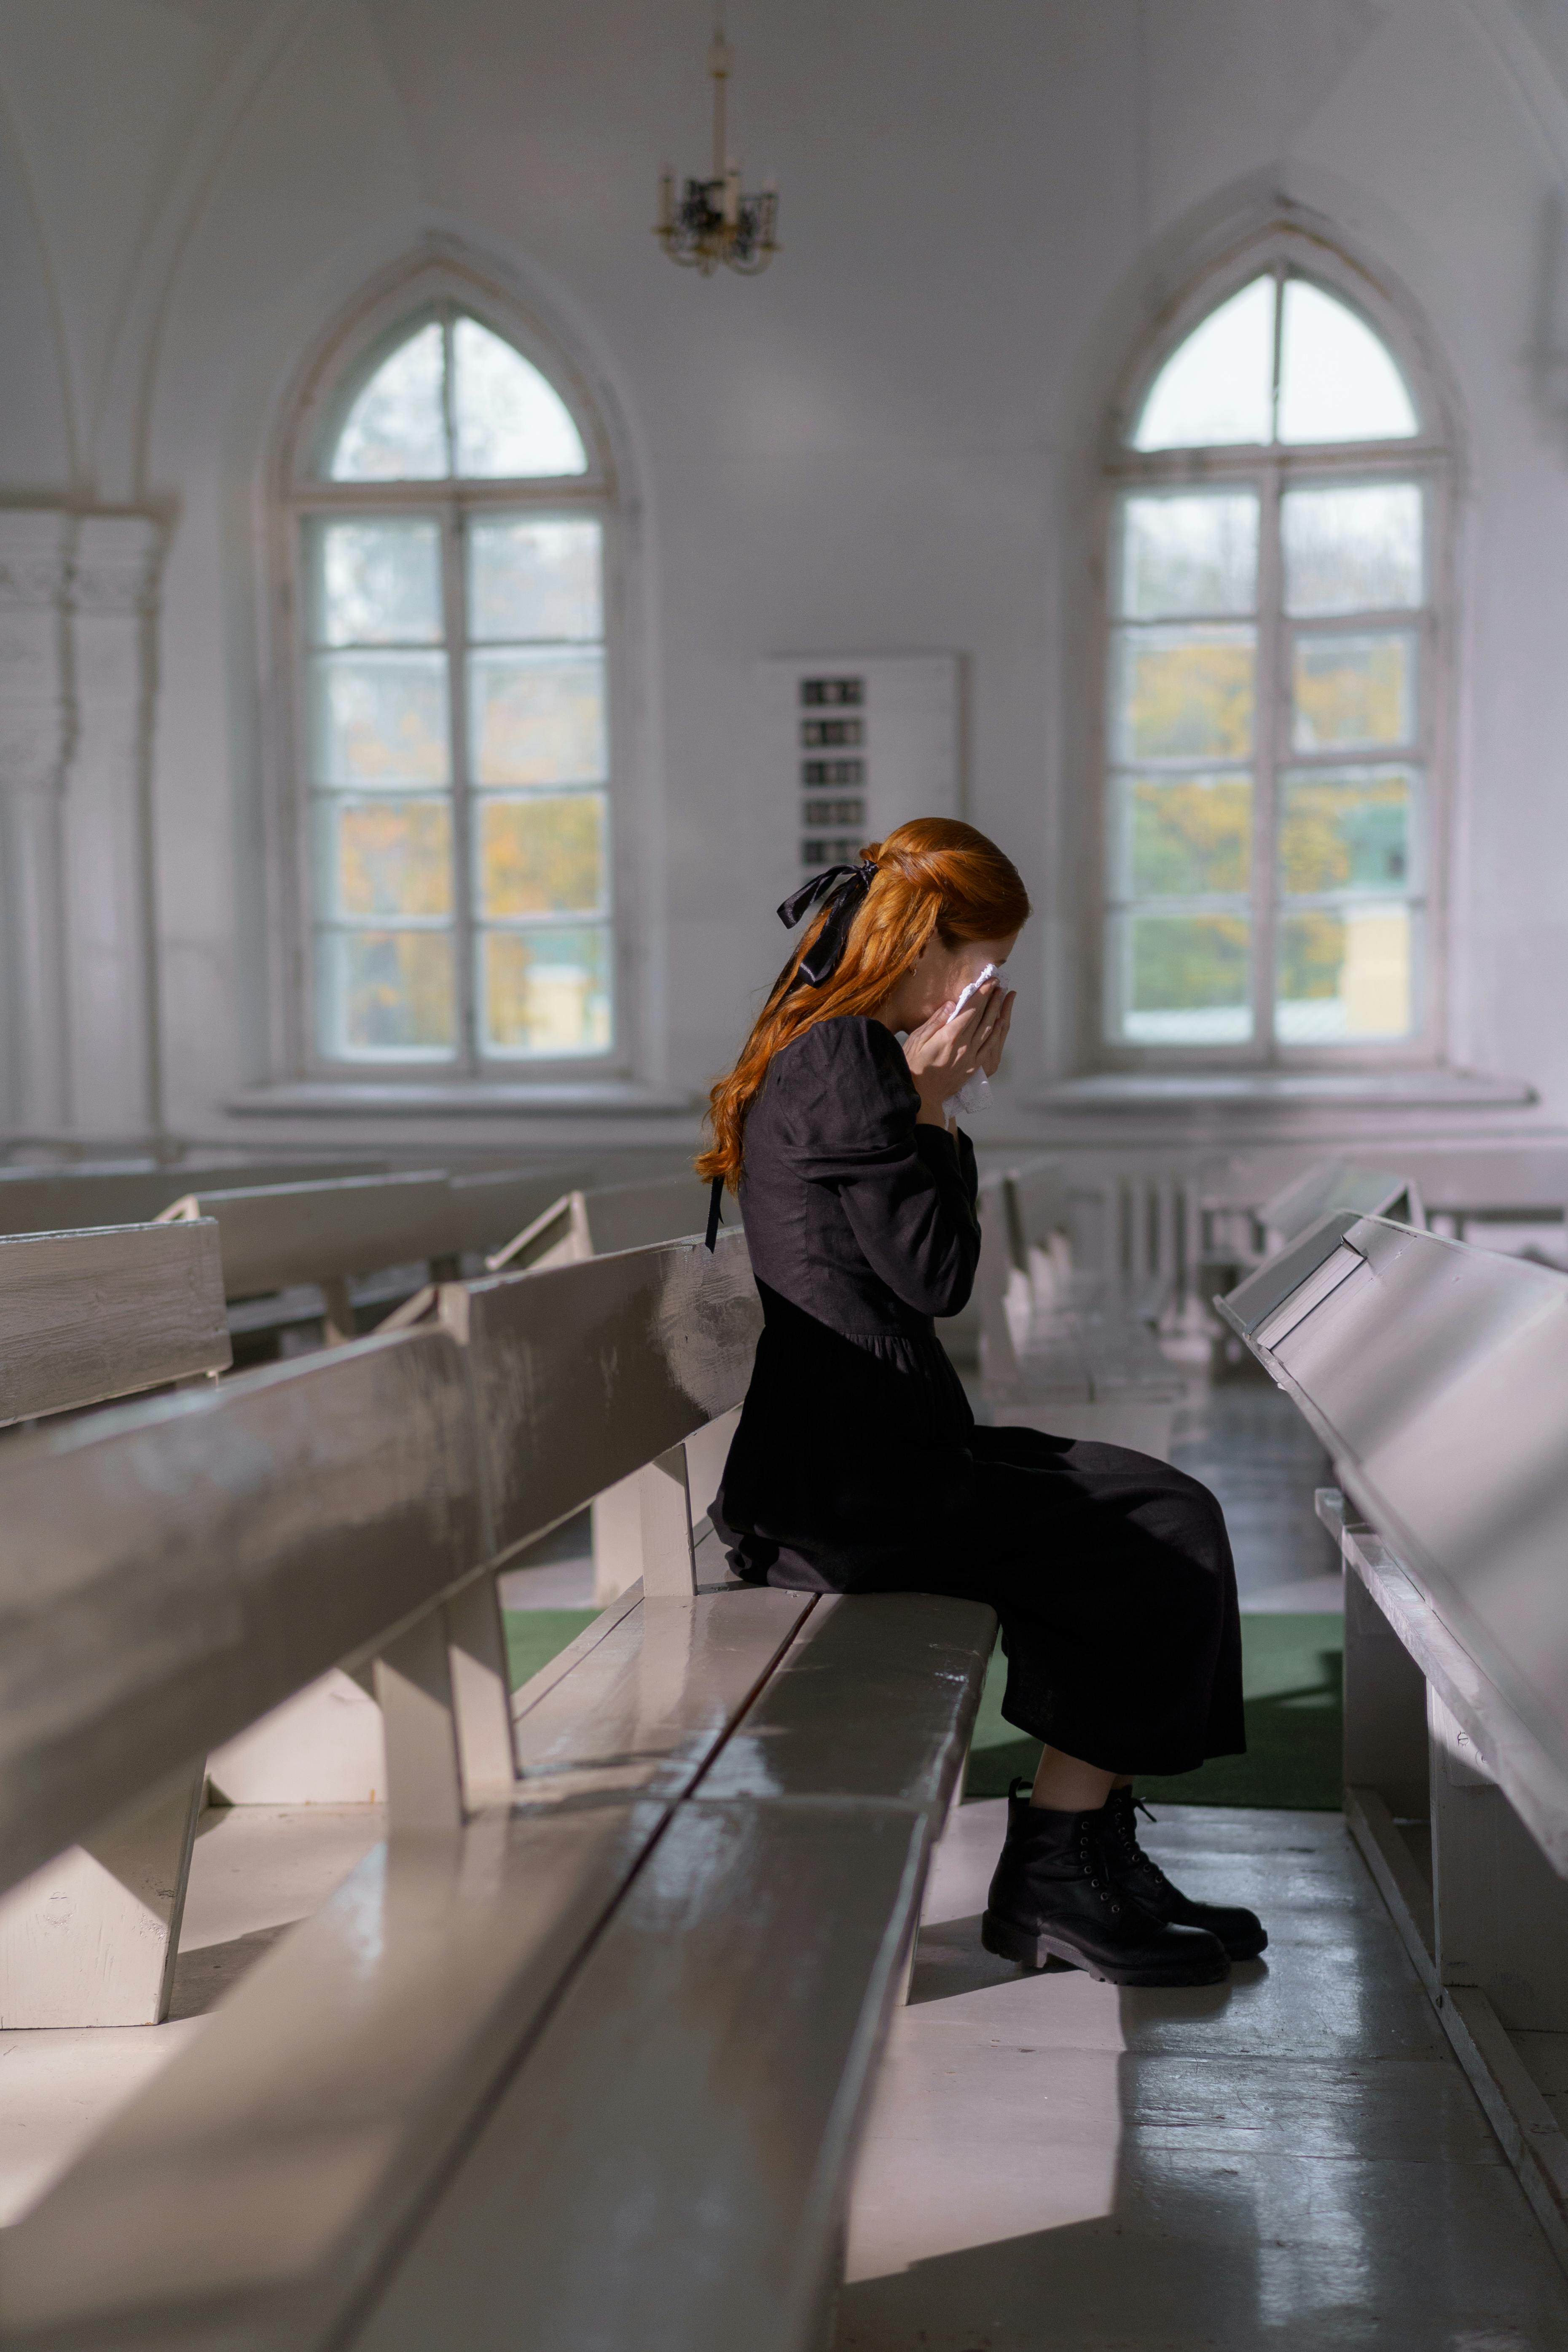 Eine weinende Frau in der Kirche | Quelle: Pexels